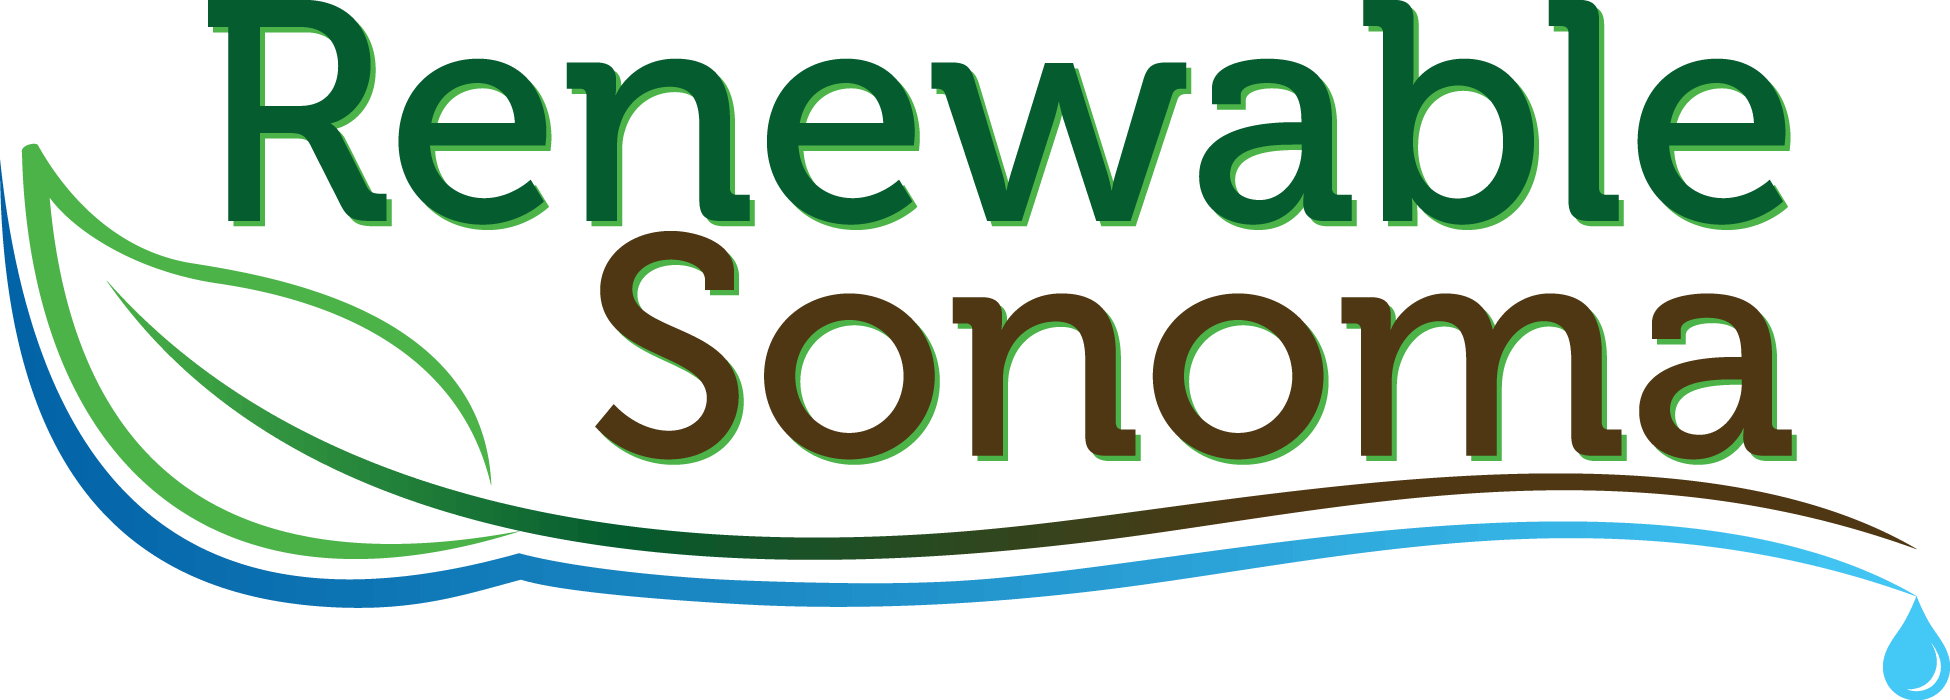 Sonoma Logo - Renewable Sonoma Compost and Mulches in Sonoma County